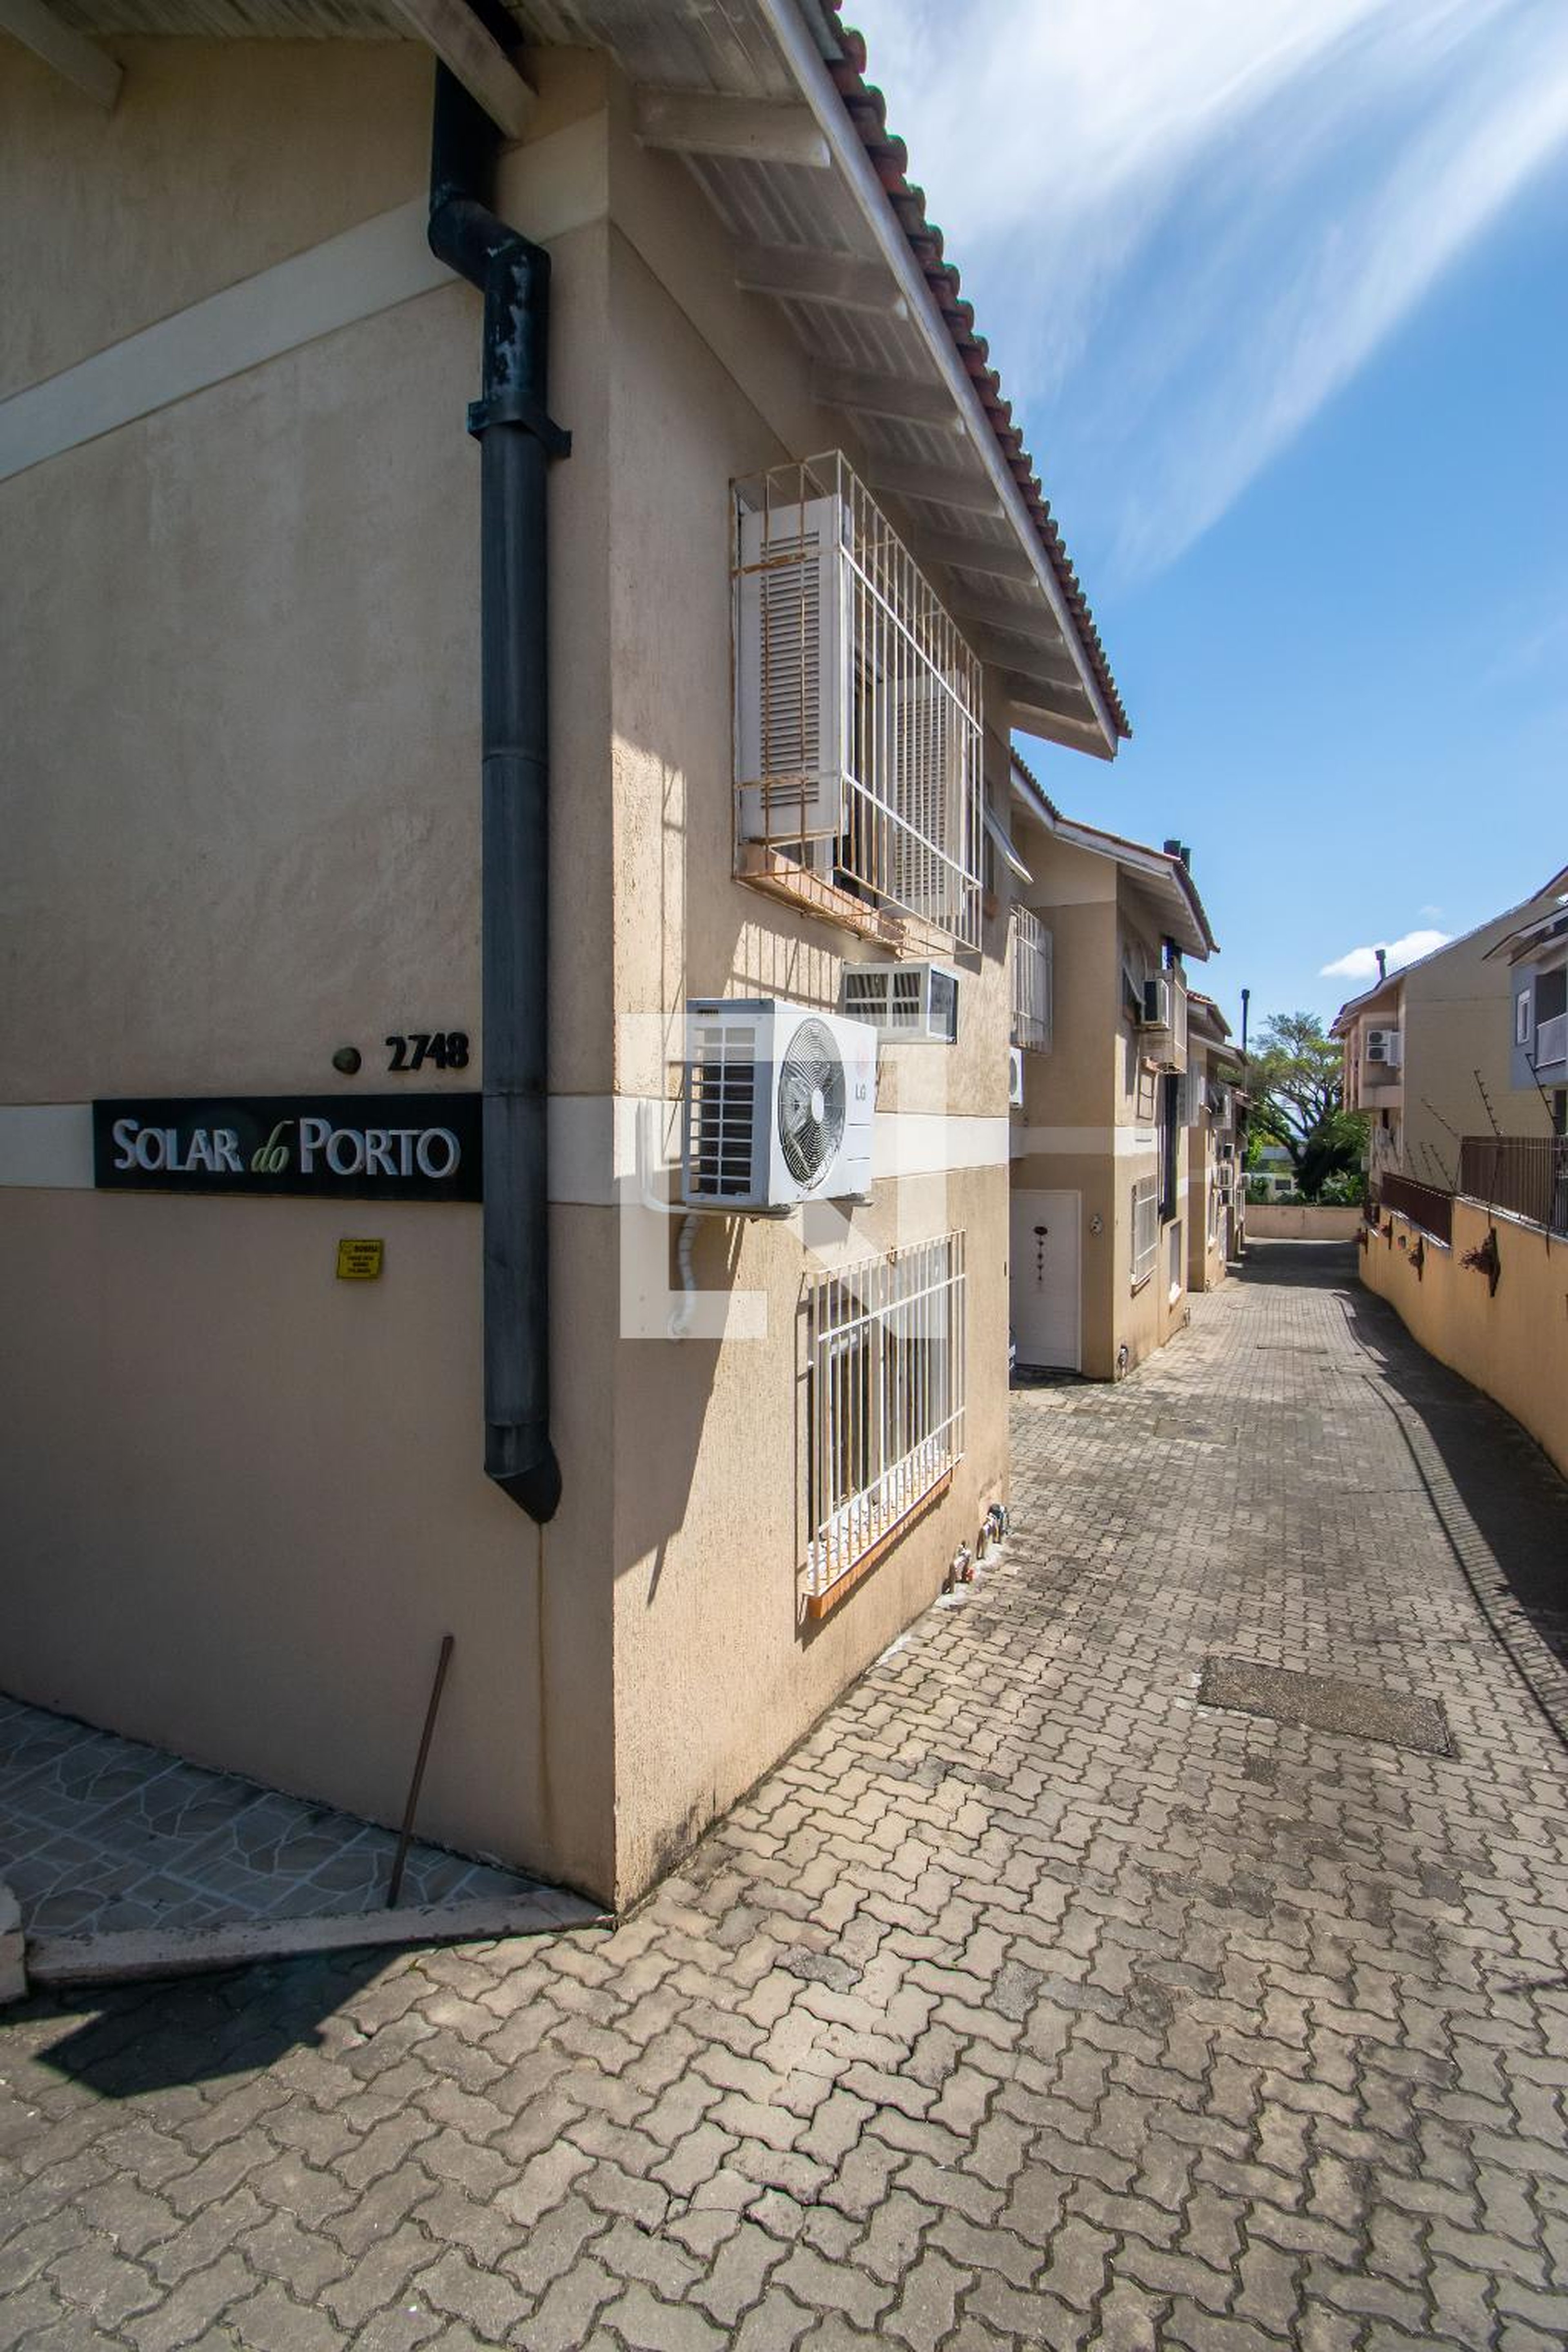 Condomínio - Solar do Porto